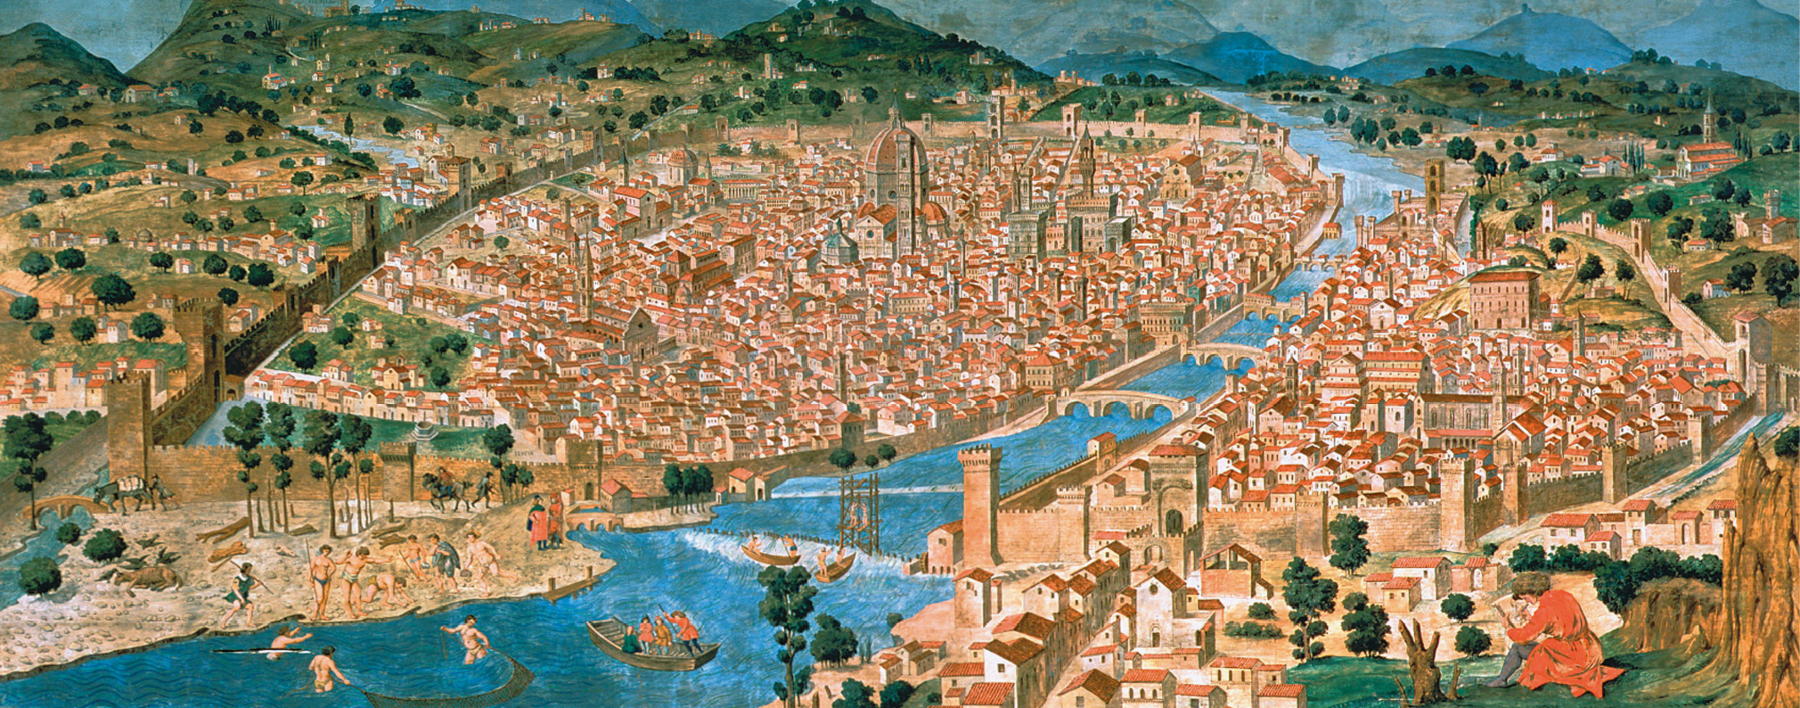 Pintura. Vista aérea de Florença, grande cidade nas margens de um longo rio. À frente, pessoas se banhando no rio e pequenas embarcações. No centro, diversas construções no interior da cidade e pontes interligando os dois lados do território. Ao fundo, montanhas e árvores.